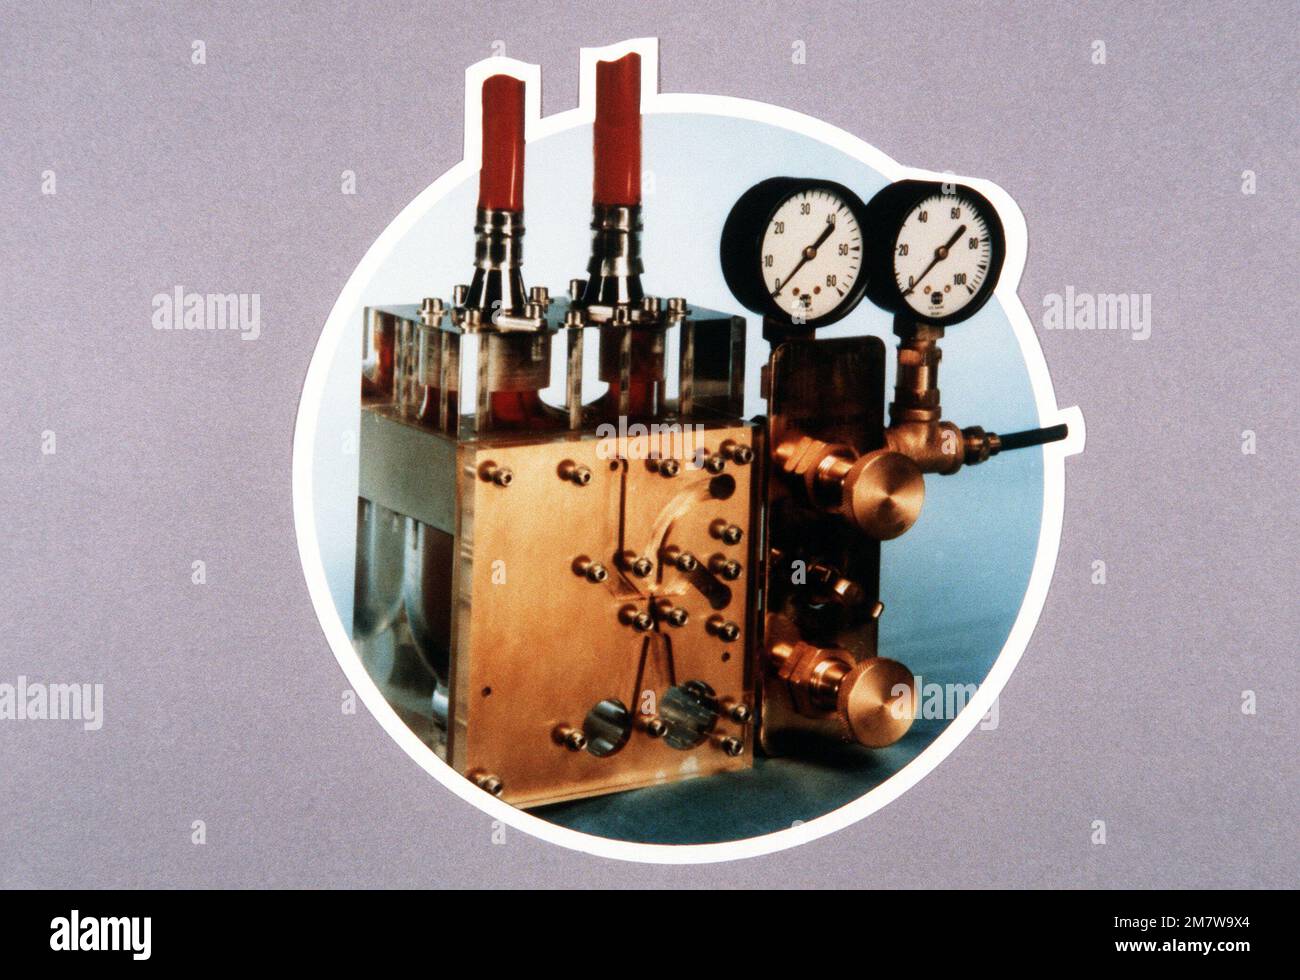 Eine Ansicht einer Herzpumpe, die von Harry Diamond Laboratories entwickelt wurde. Basis: Adelphi Bundesstaat: Maryland (MD) Land: Vereinigte Staaten von Amerika (USA) Stockfoto